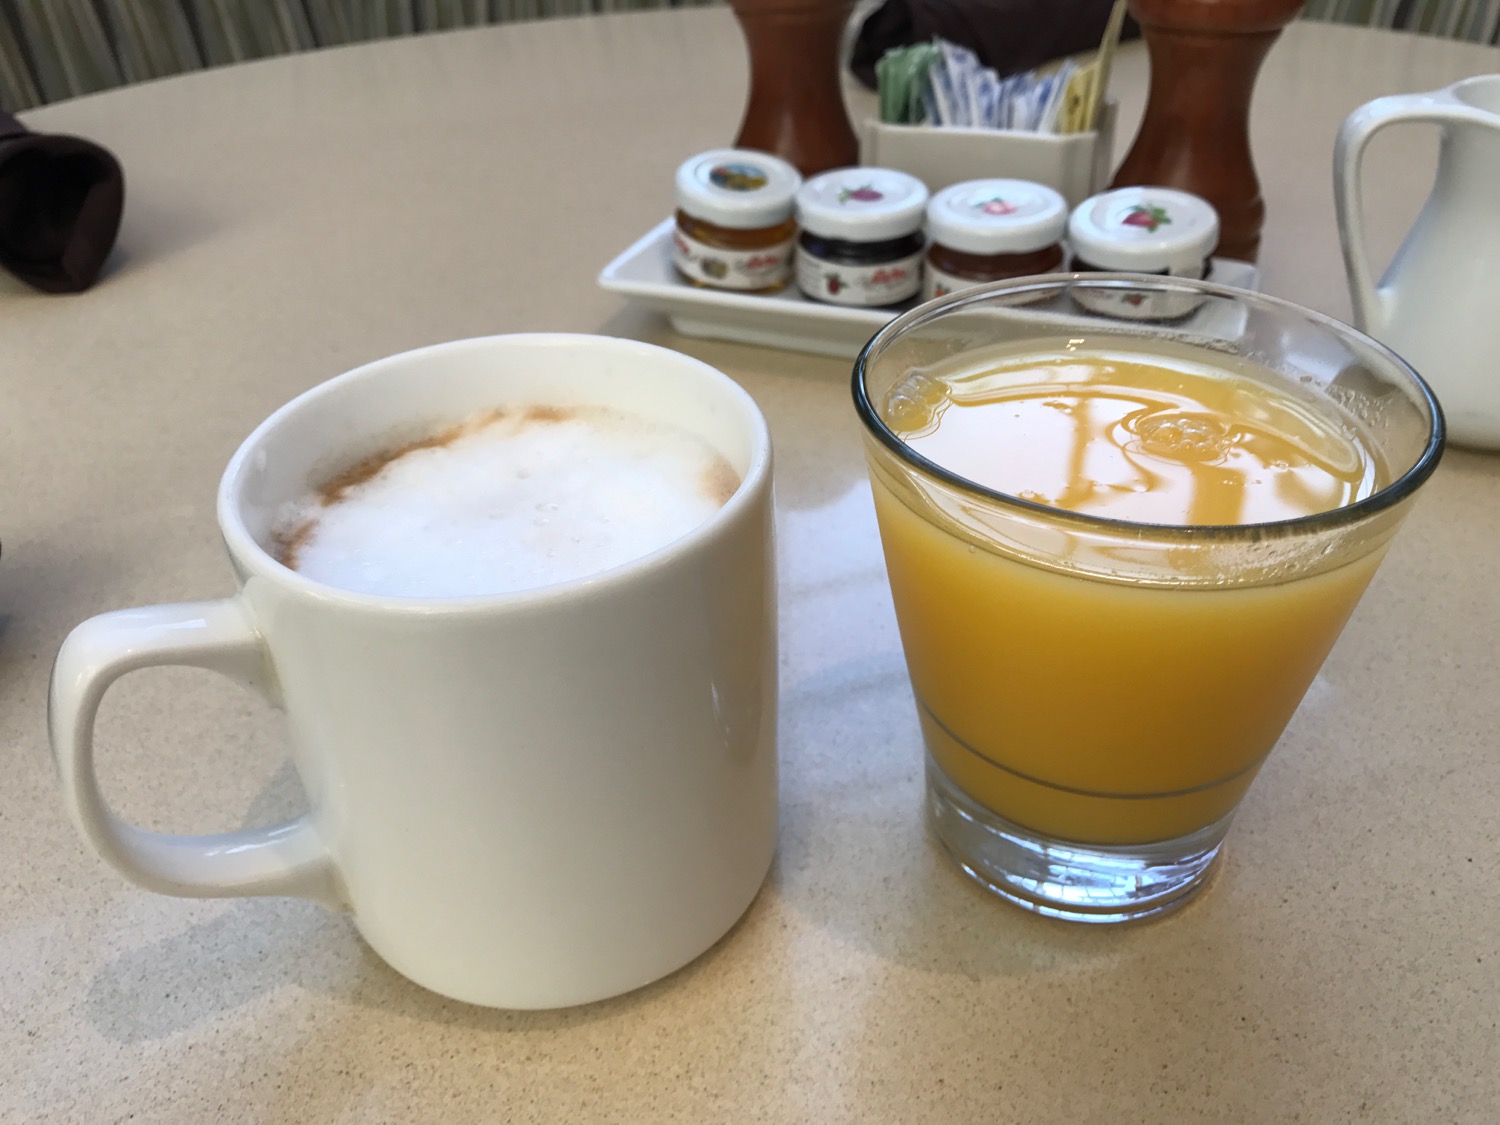 a coffee mug and a glass of orange juice on a table